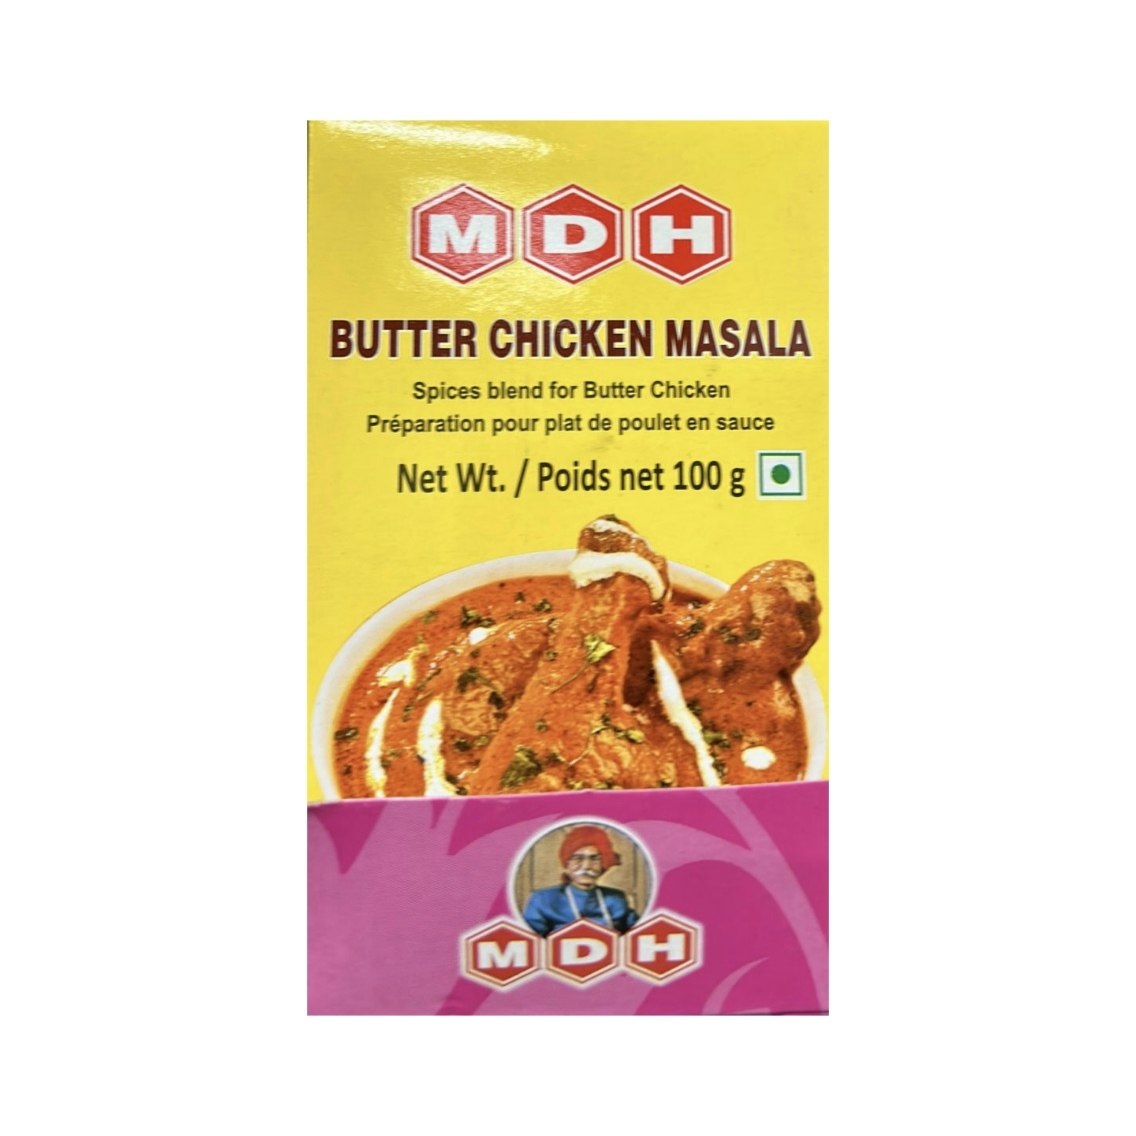 Butter Chicken Masala 100g (MDH)